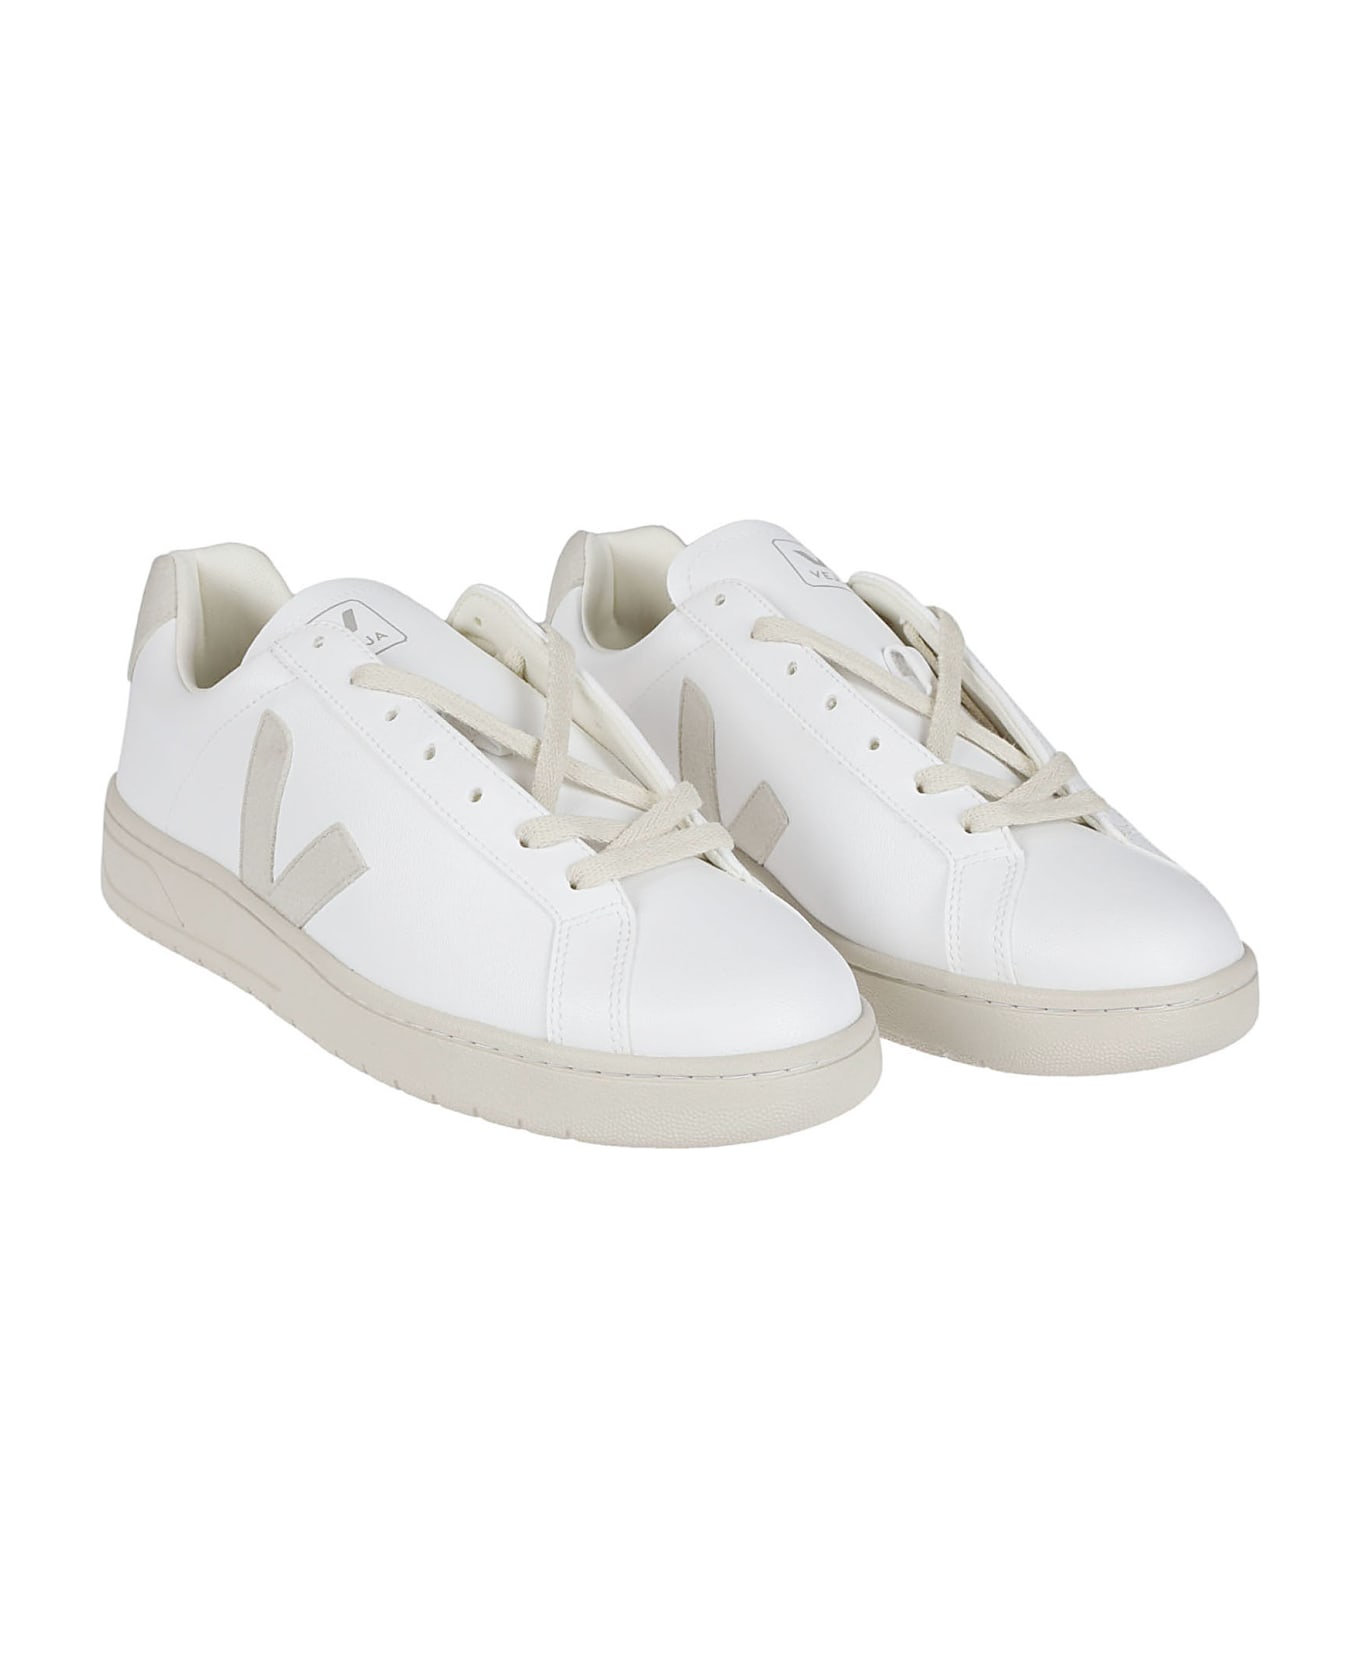 Veja Urca Sneakers - White/natural